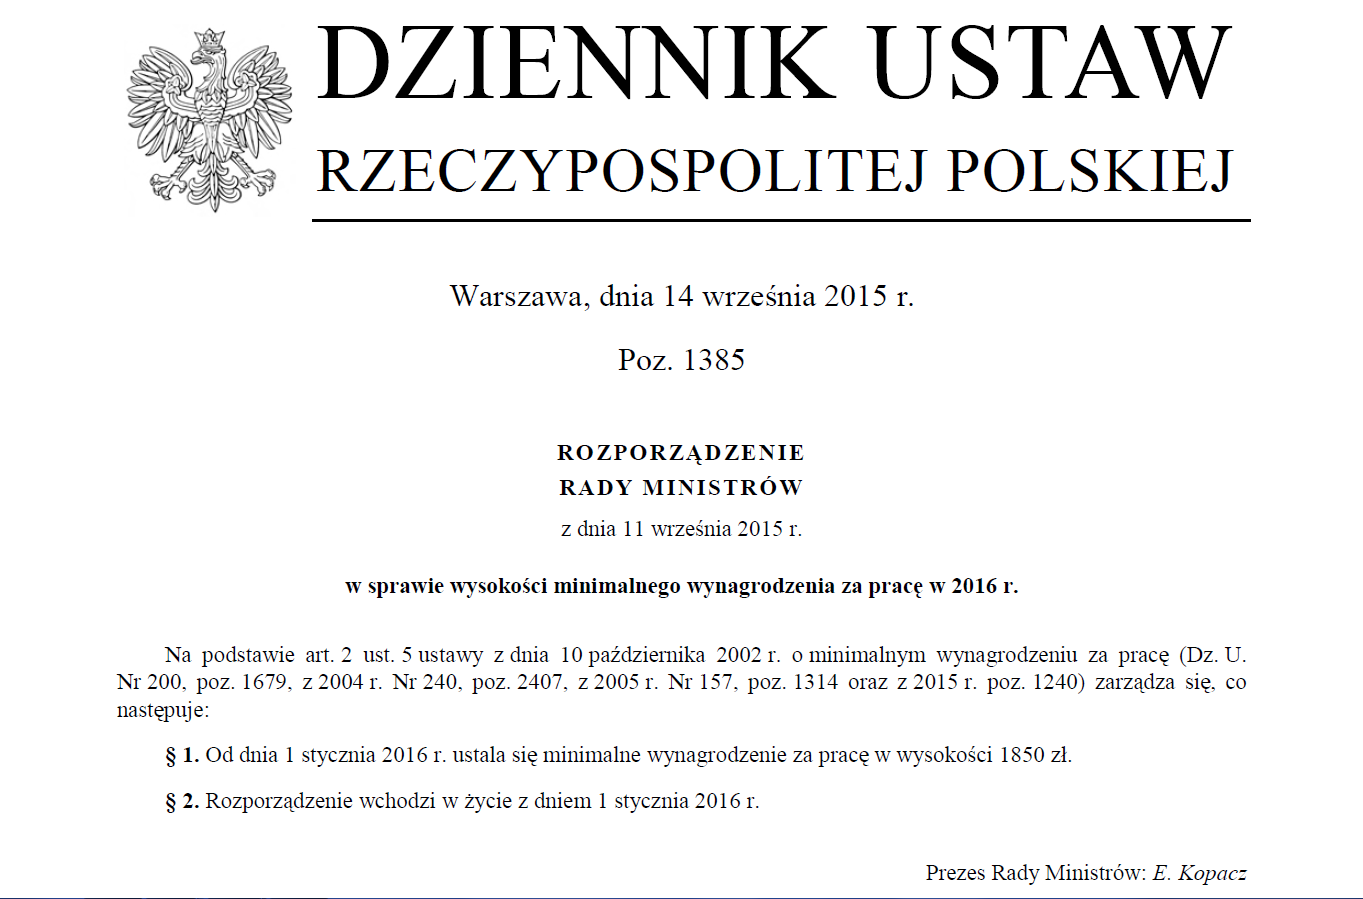 Rozporządzenie E. Kopacz 11.9.2015